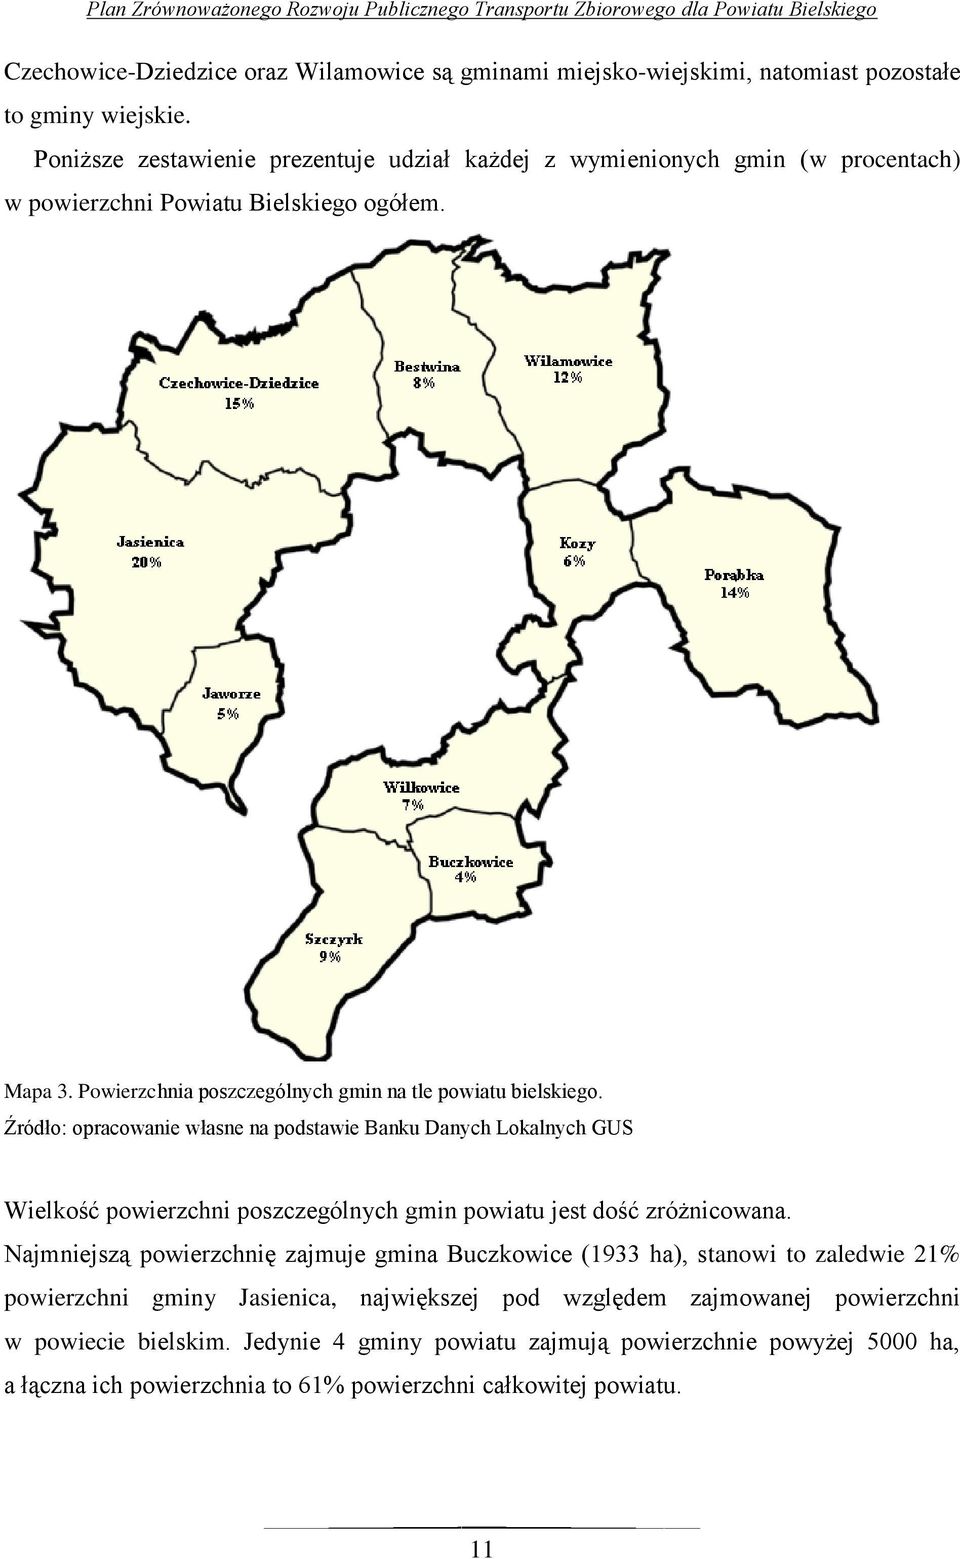 Powierzchnia poszczególnych gmin na tle powiatu bielskiego.